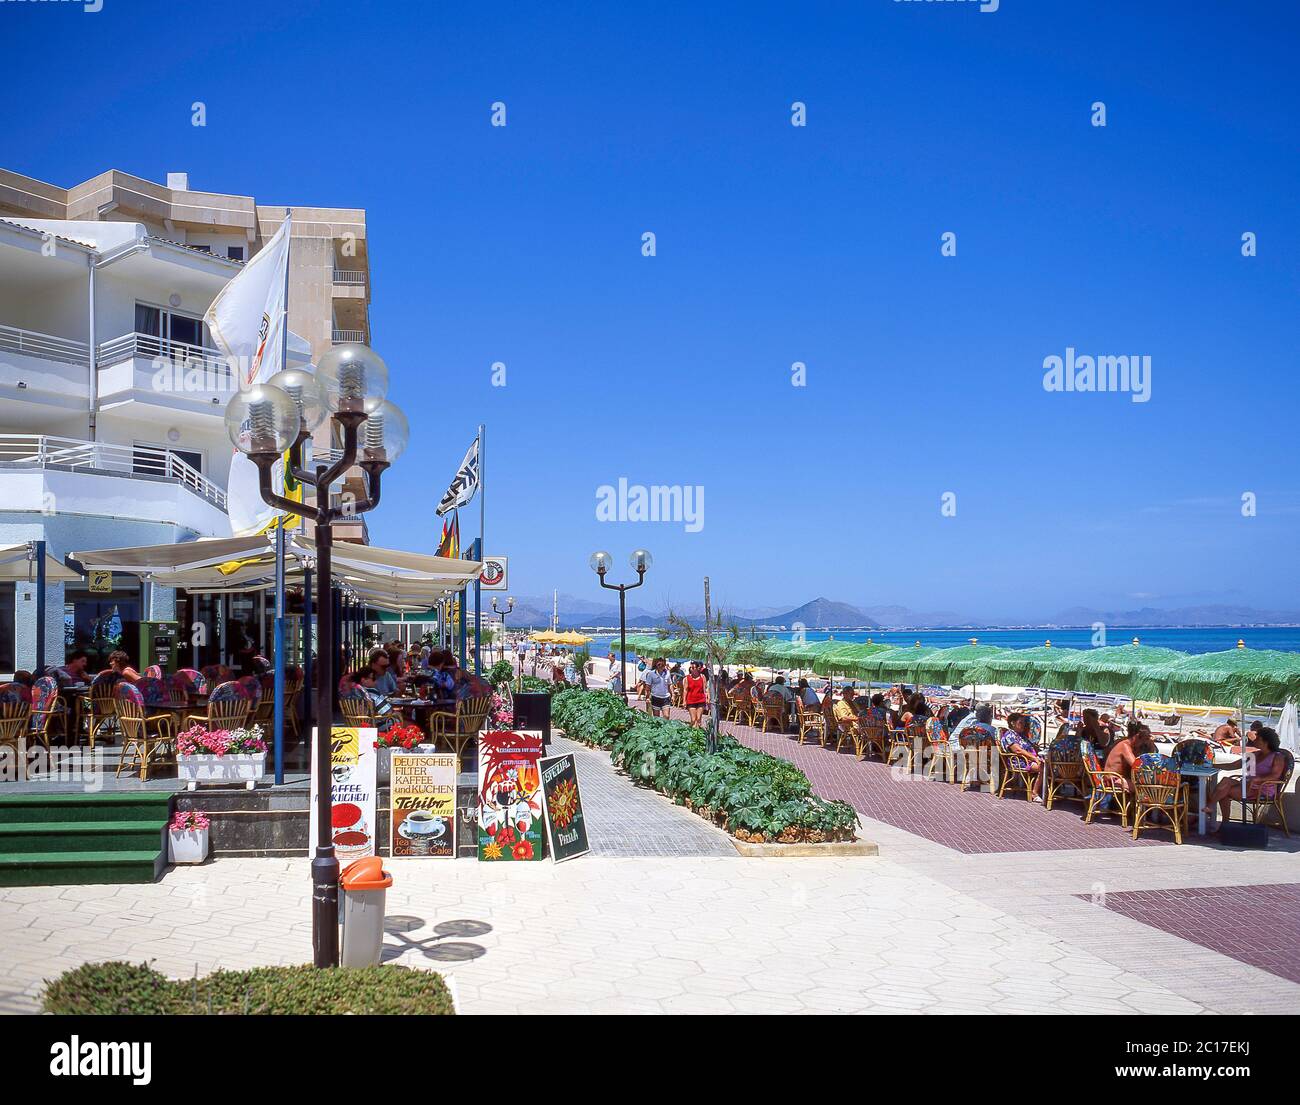 Vista sulla spiaggia e sul lungomare, Can Picafort, Maiorca (Maiorca), Isole Baleari, Spagna Foto Stock